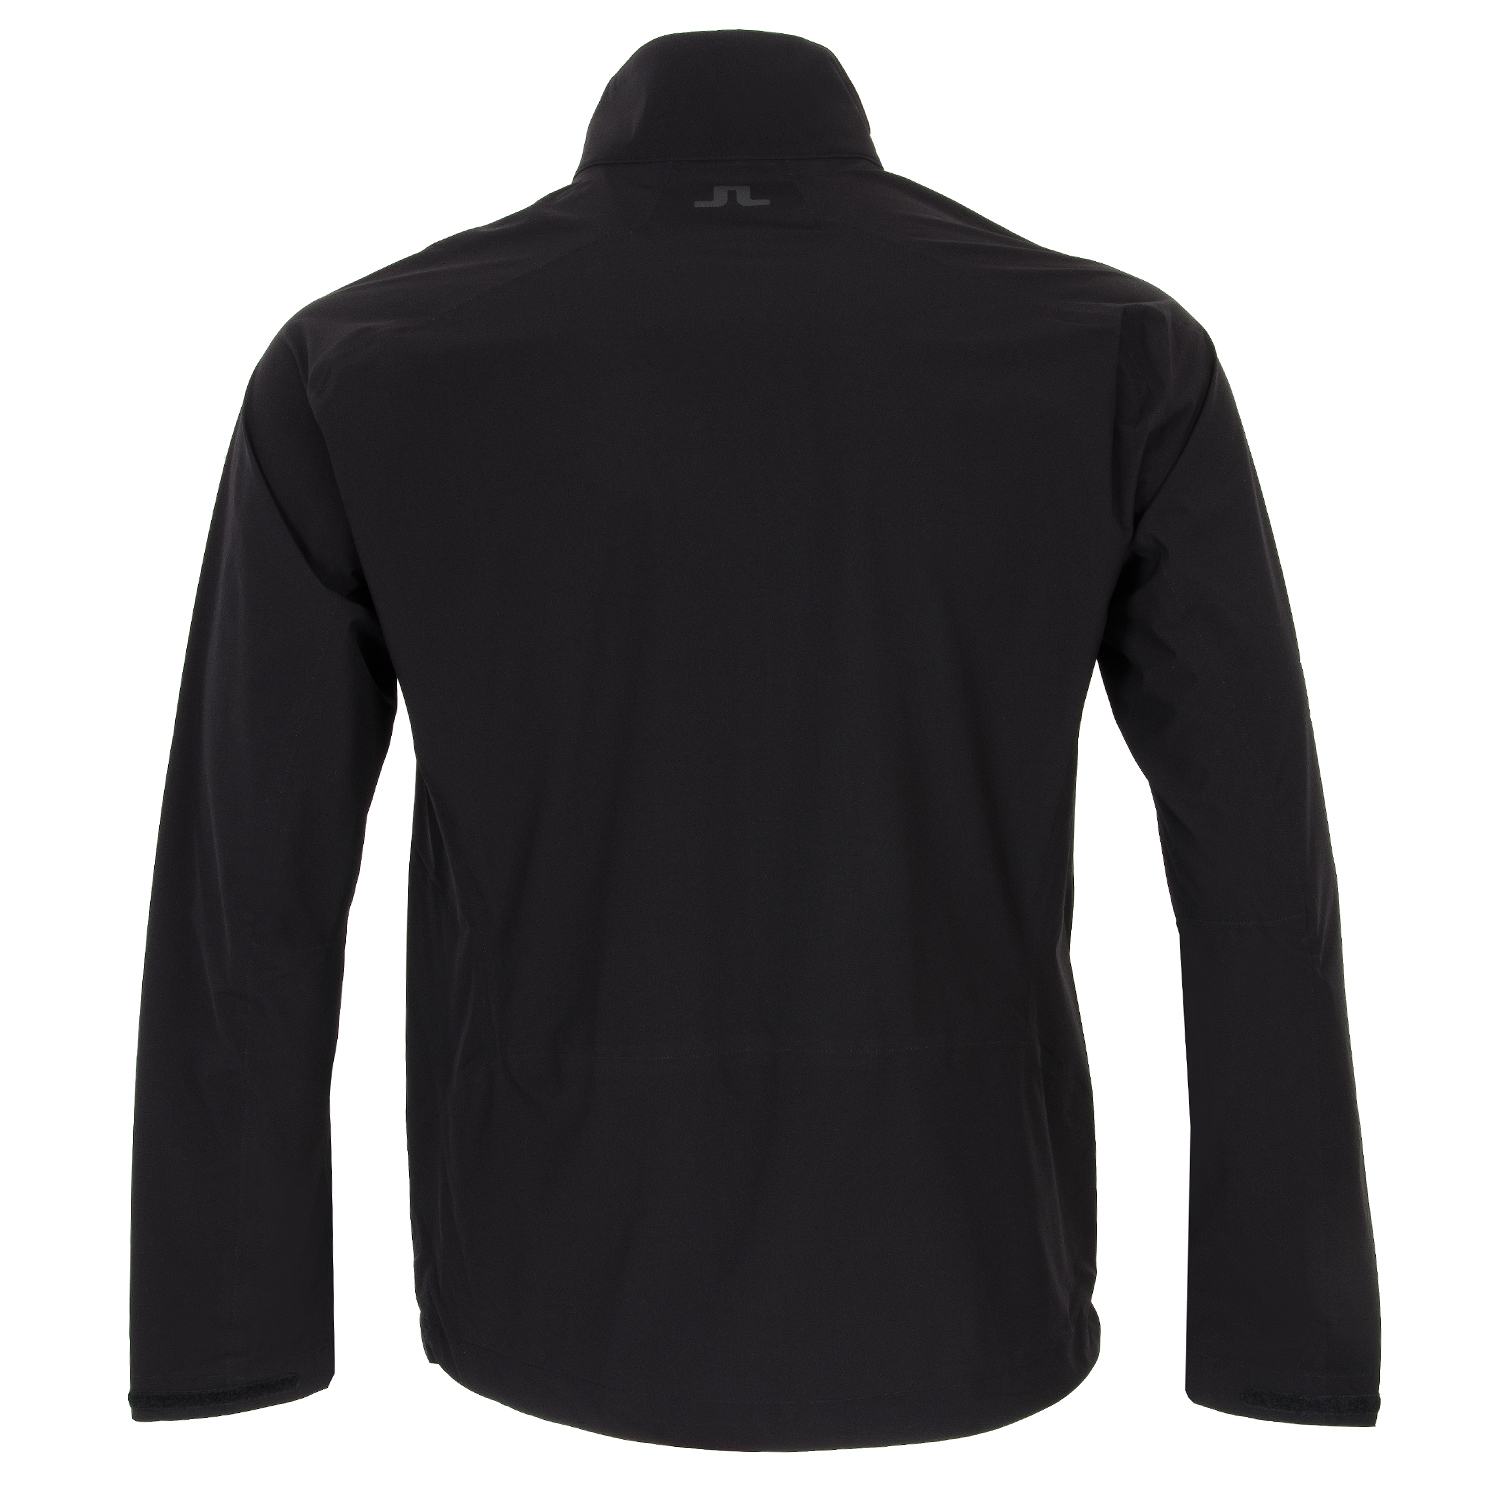 J Lindeberg Easypac Waterproof Golf Jacket Black | Scottsdale Golf